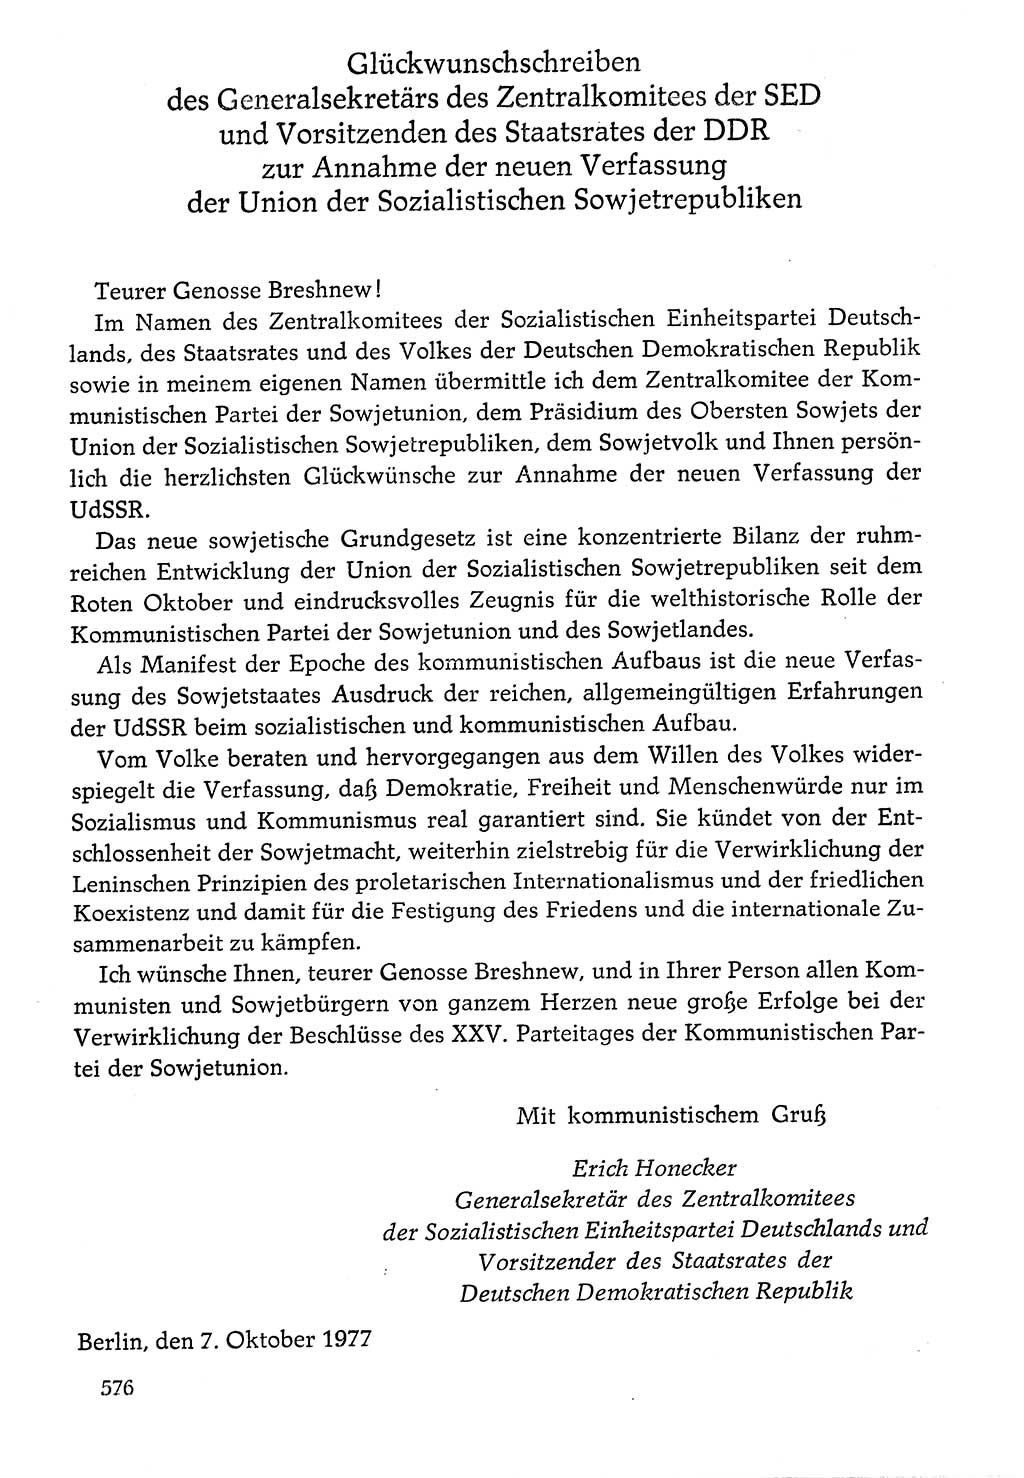 Dokumente der Sozialistischen Einheitspartei Deutschlands (SED) [Deutsche Demokratische Republik (DDR)] 1976-1977, Seite 576 (Dok. SED DDR 1976-1977, S. 576)